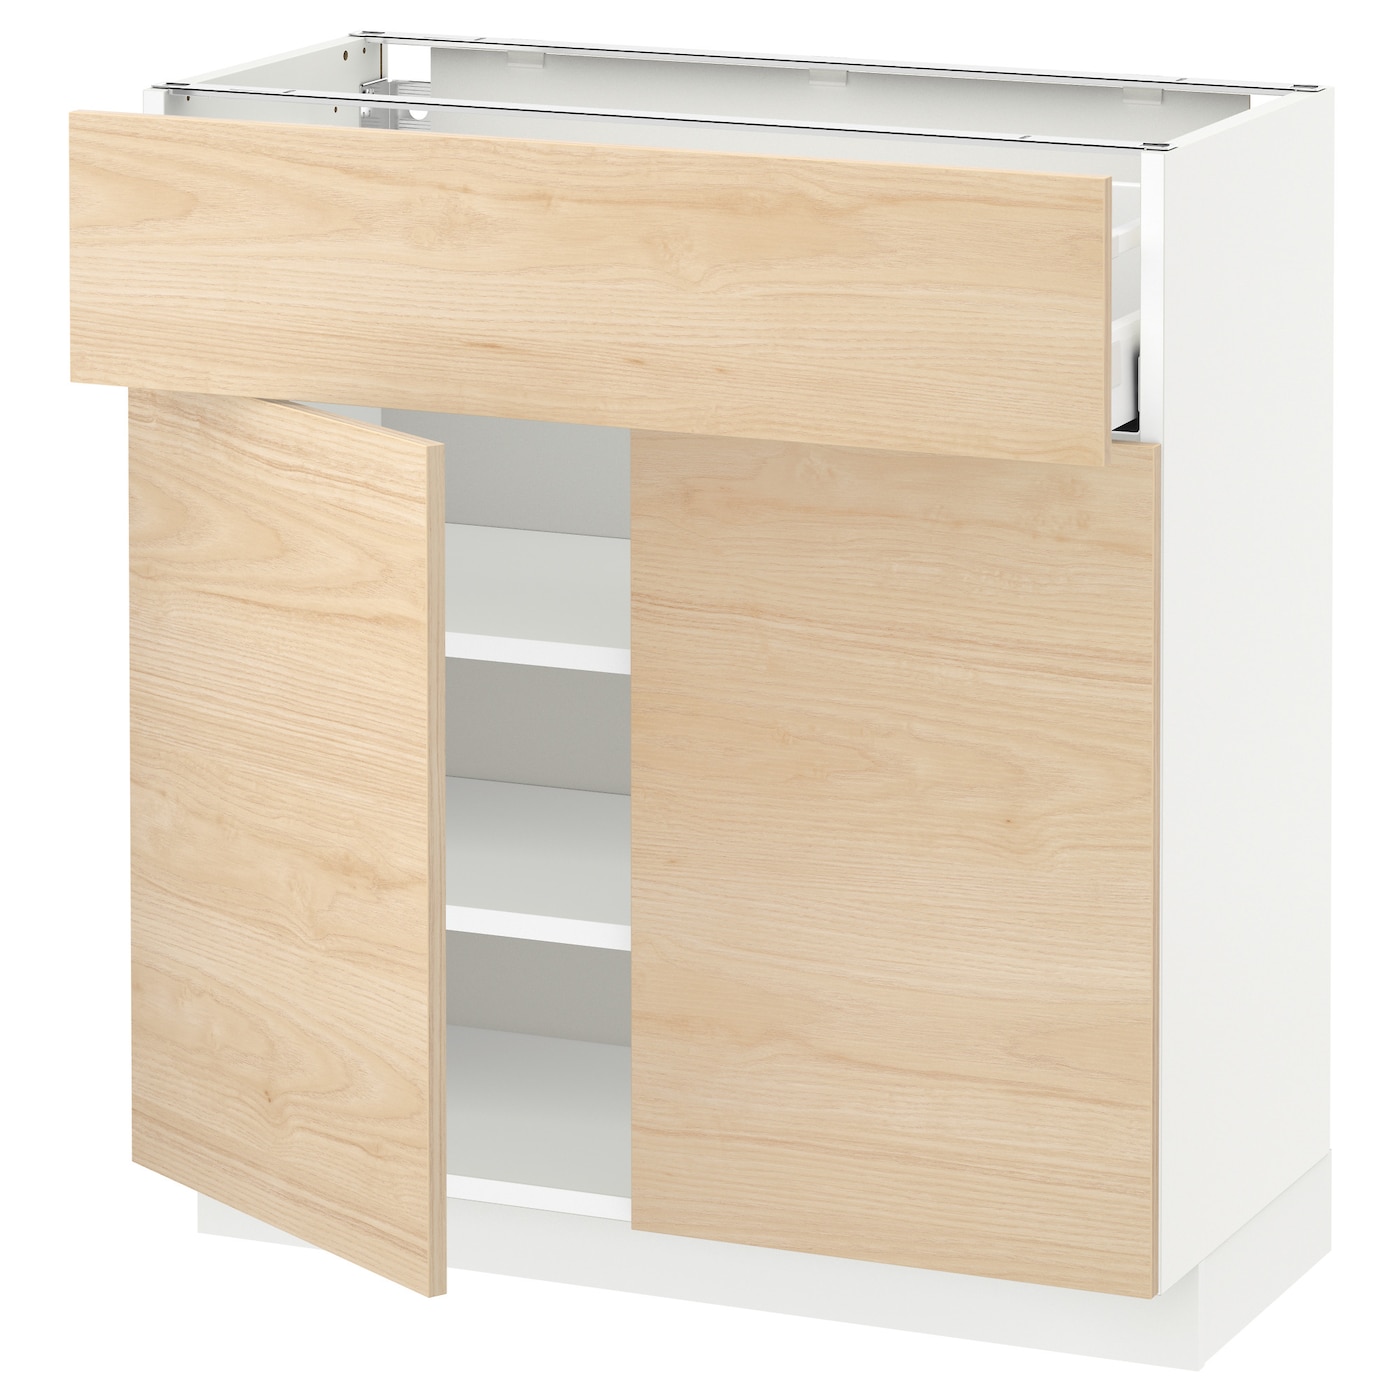 Напольный кухонный шкаф  - IKEA METOD MAXIMERA, 80x37x80см, белый/светло-коричневый, МЕТОД МАКСИМЕРА ИКЕА